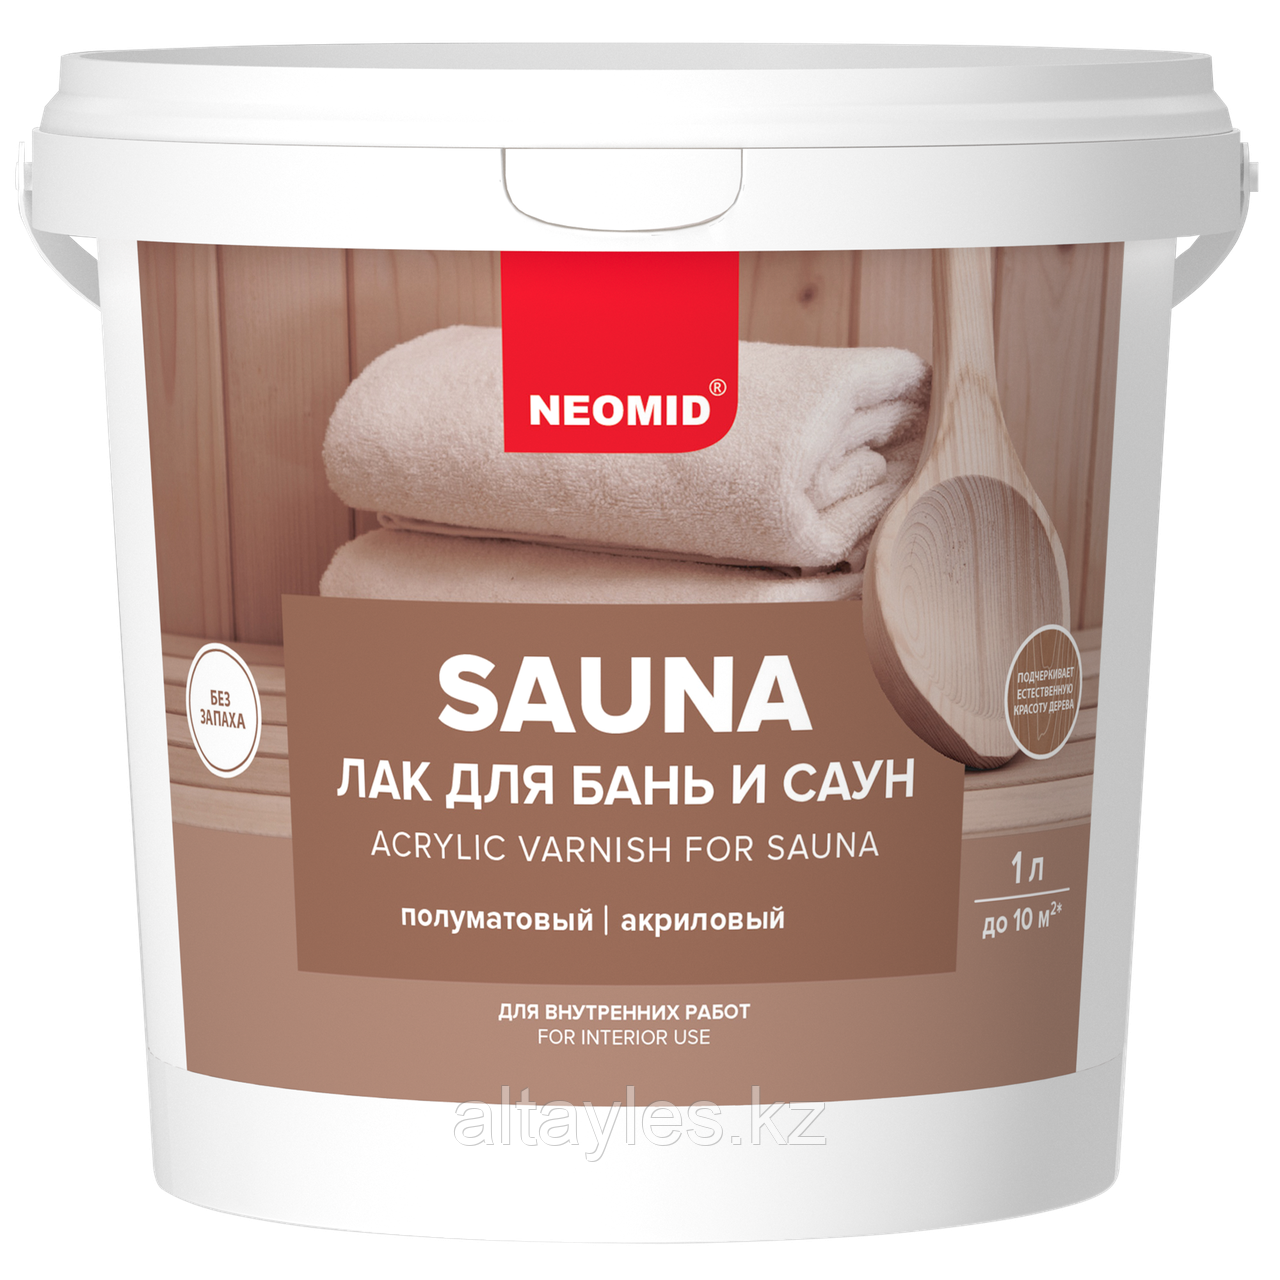 Лак для бань и саун Neomid Sauna | 1 л.